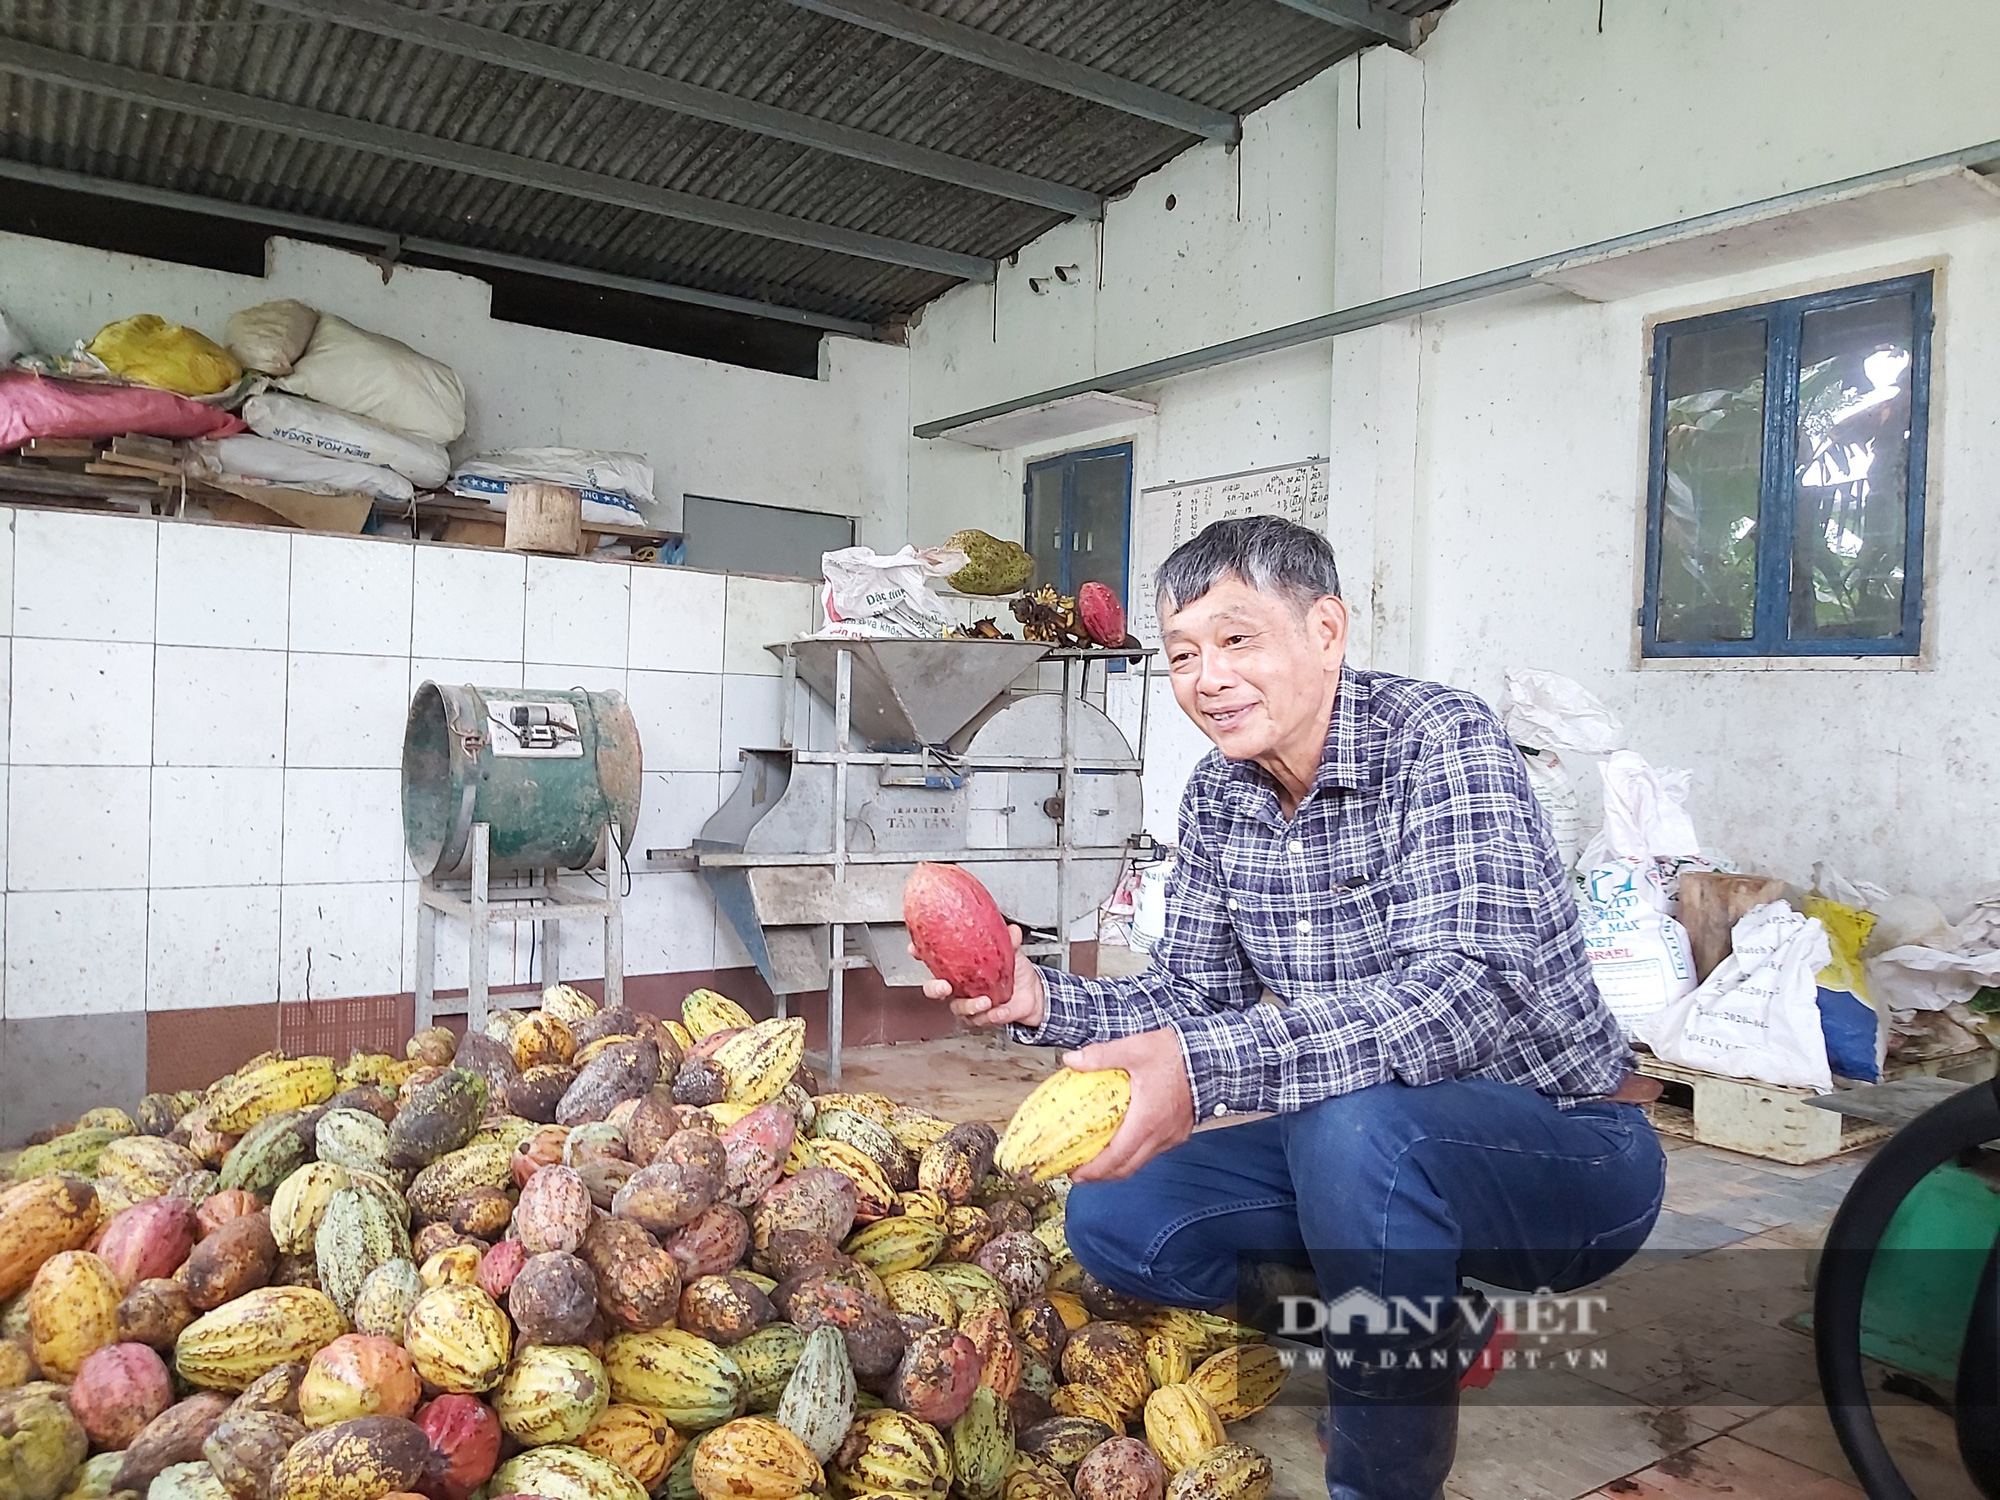 Tiến sĩ về vườn làm ra dòng socola đắt nhất Việt Nam - Ảnh 1.